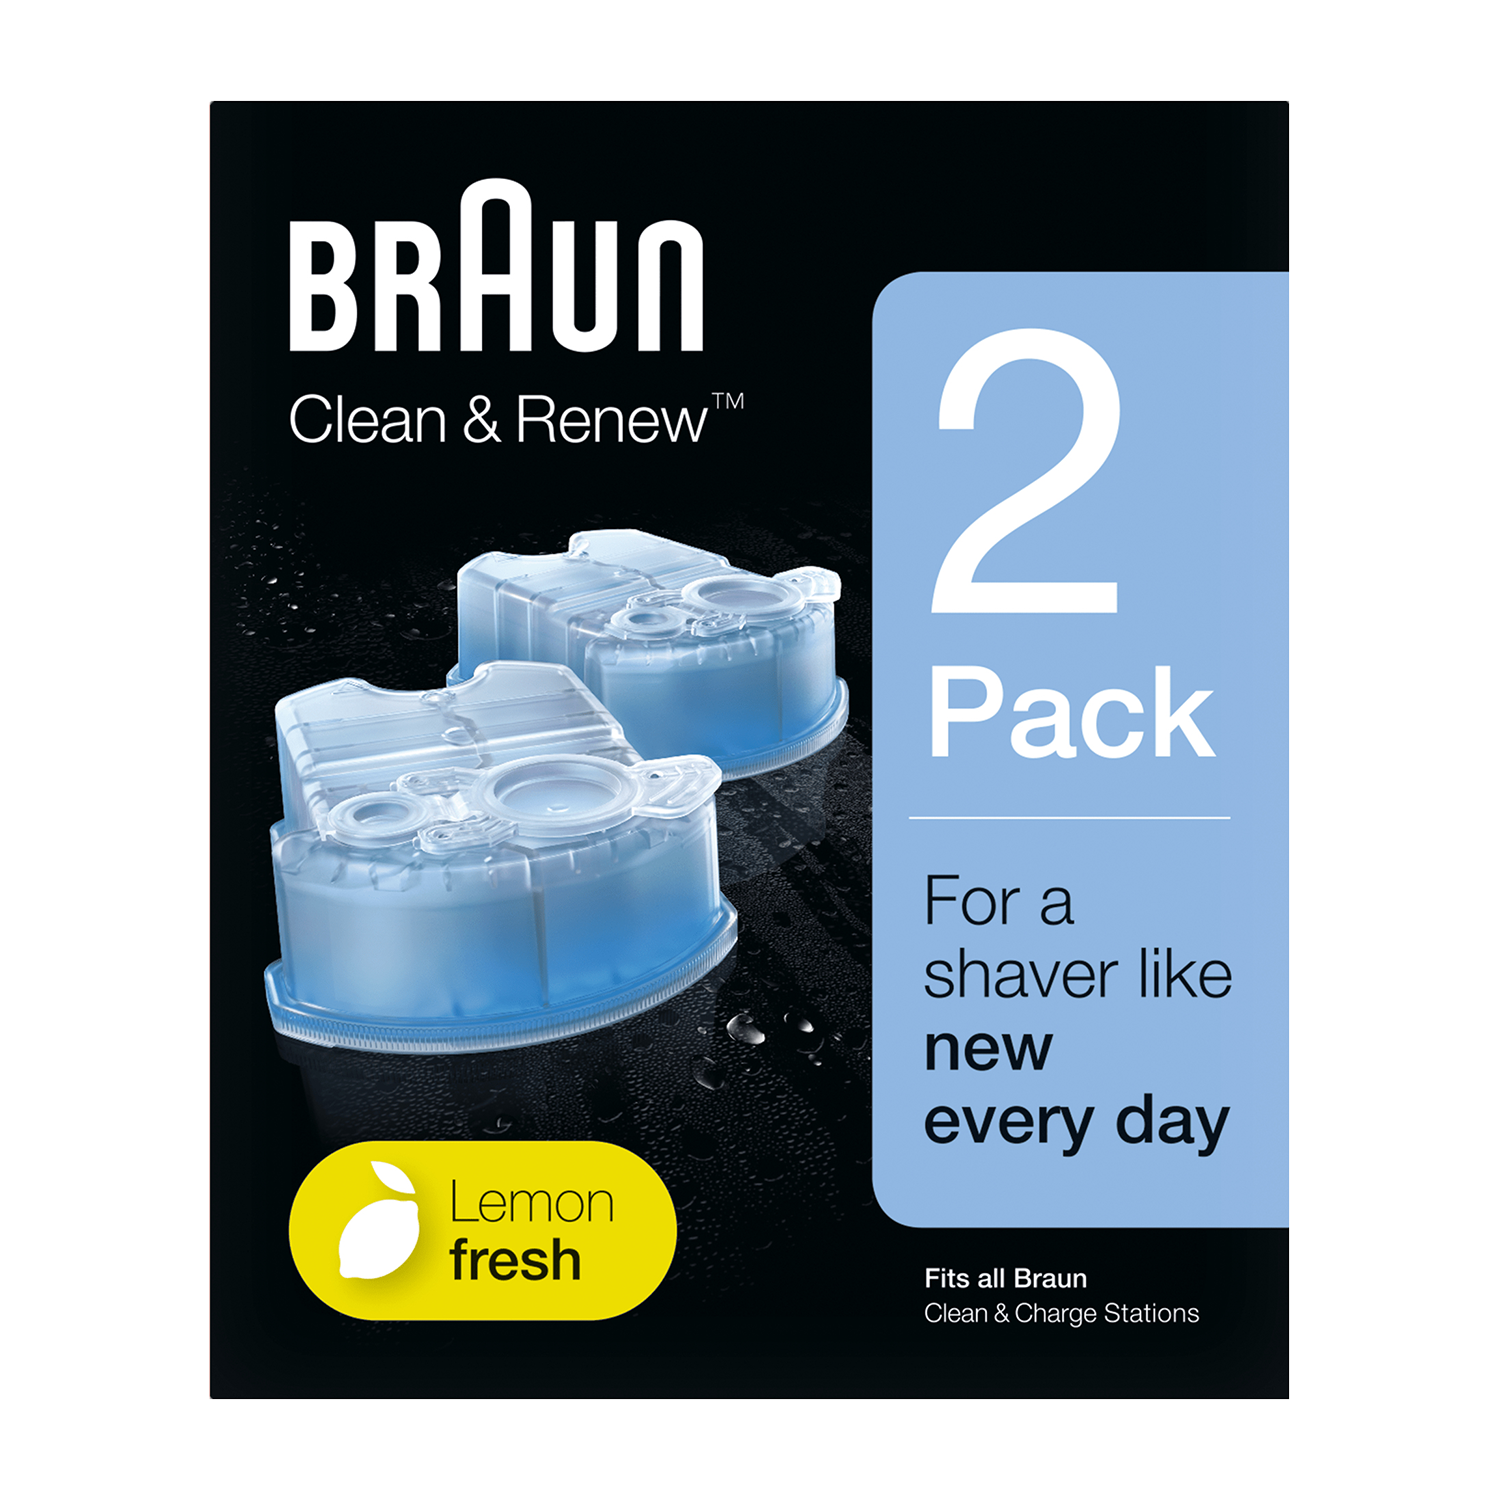 Braun CCR2 Syncro System Clean & Charge 2 Refills | Nachf?llkartuschen f?r die Reinigungsstation | Rasierkopfreiniger | Braun Flex Integral + von Braun